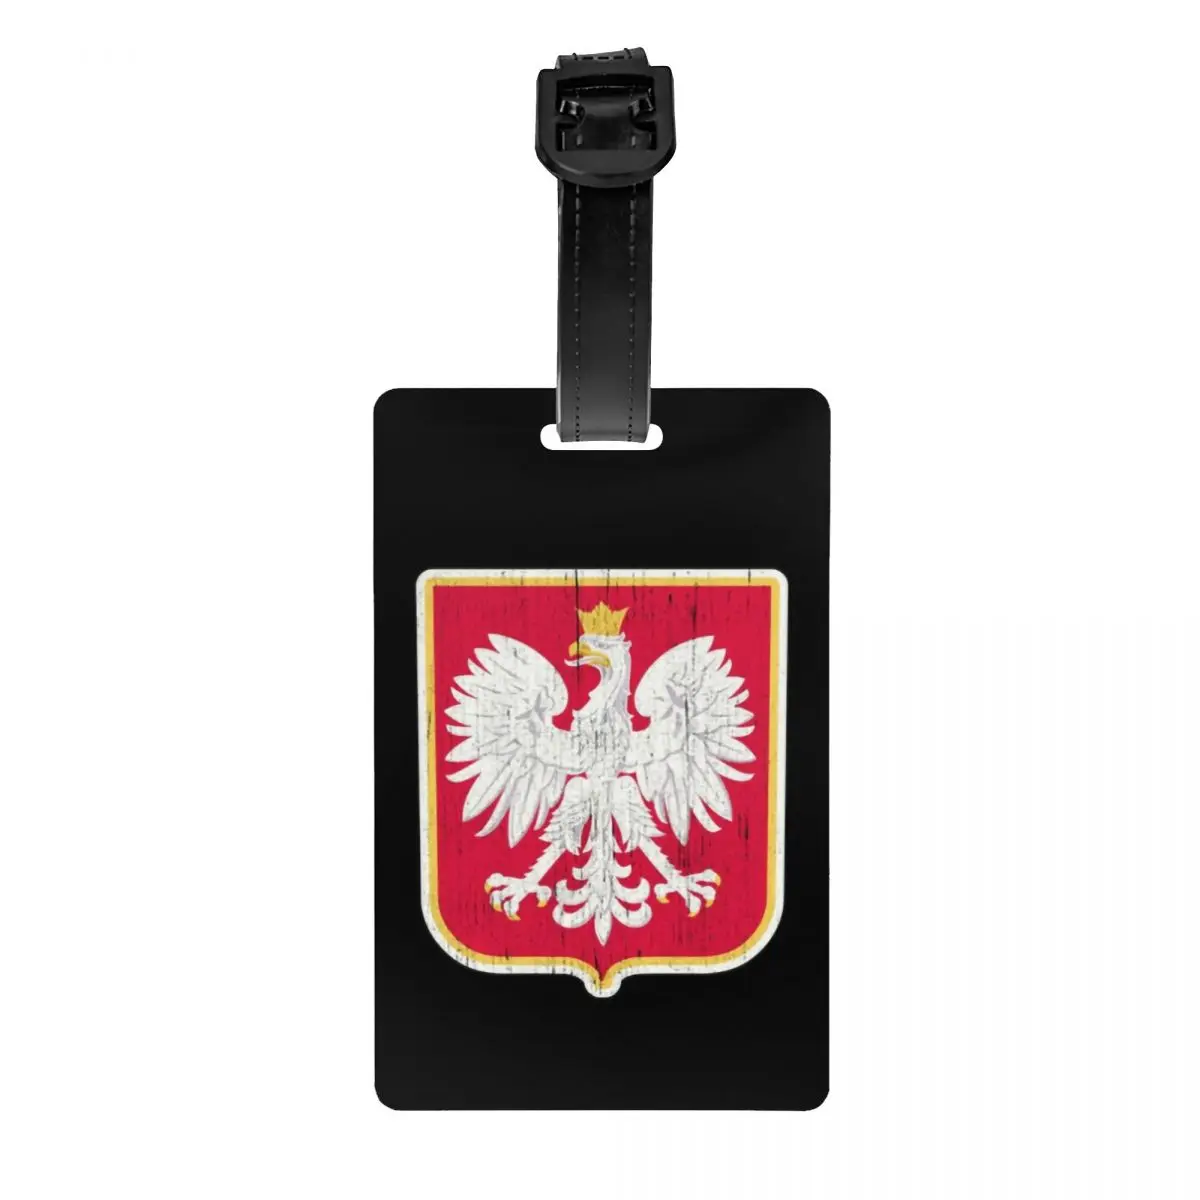 

Пользовательский полированный герб России, этикетка для багажа с орлом, защита конфиденциальности, флаг Польши, бирки для багажа, этикетки для дорожных сумок, чемоданов